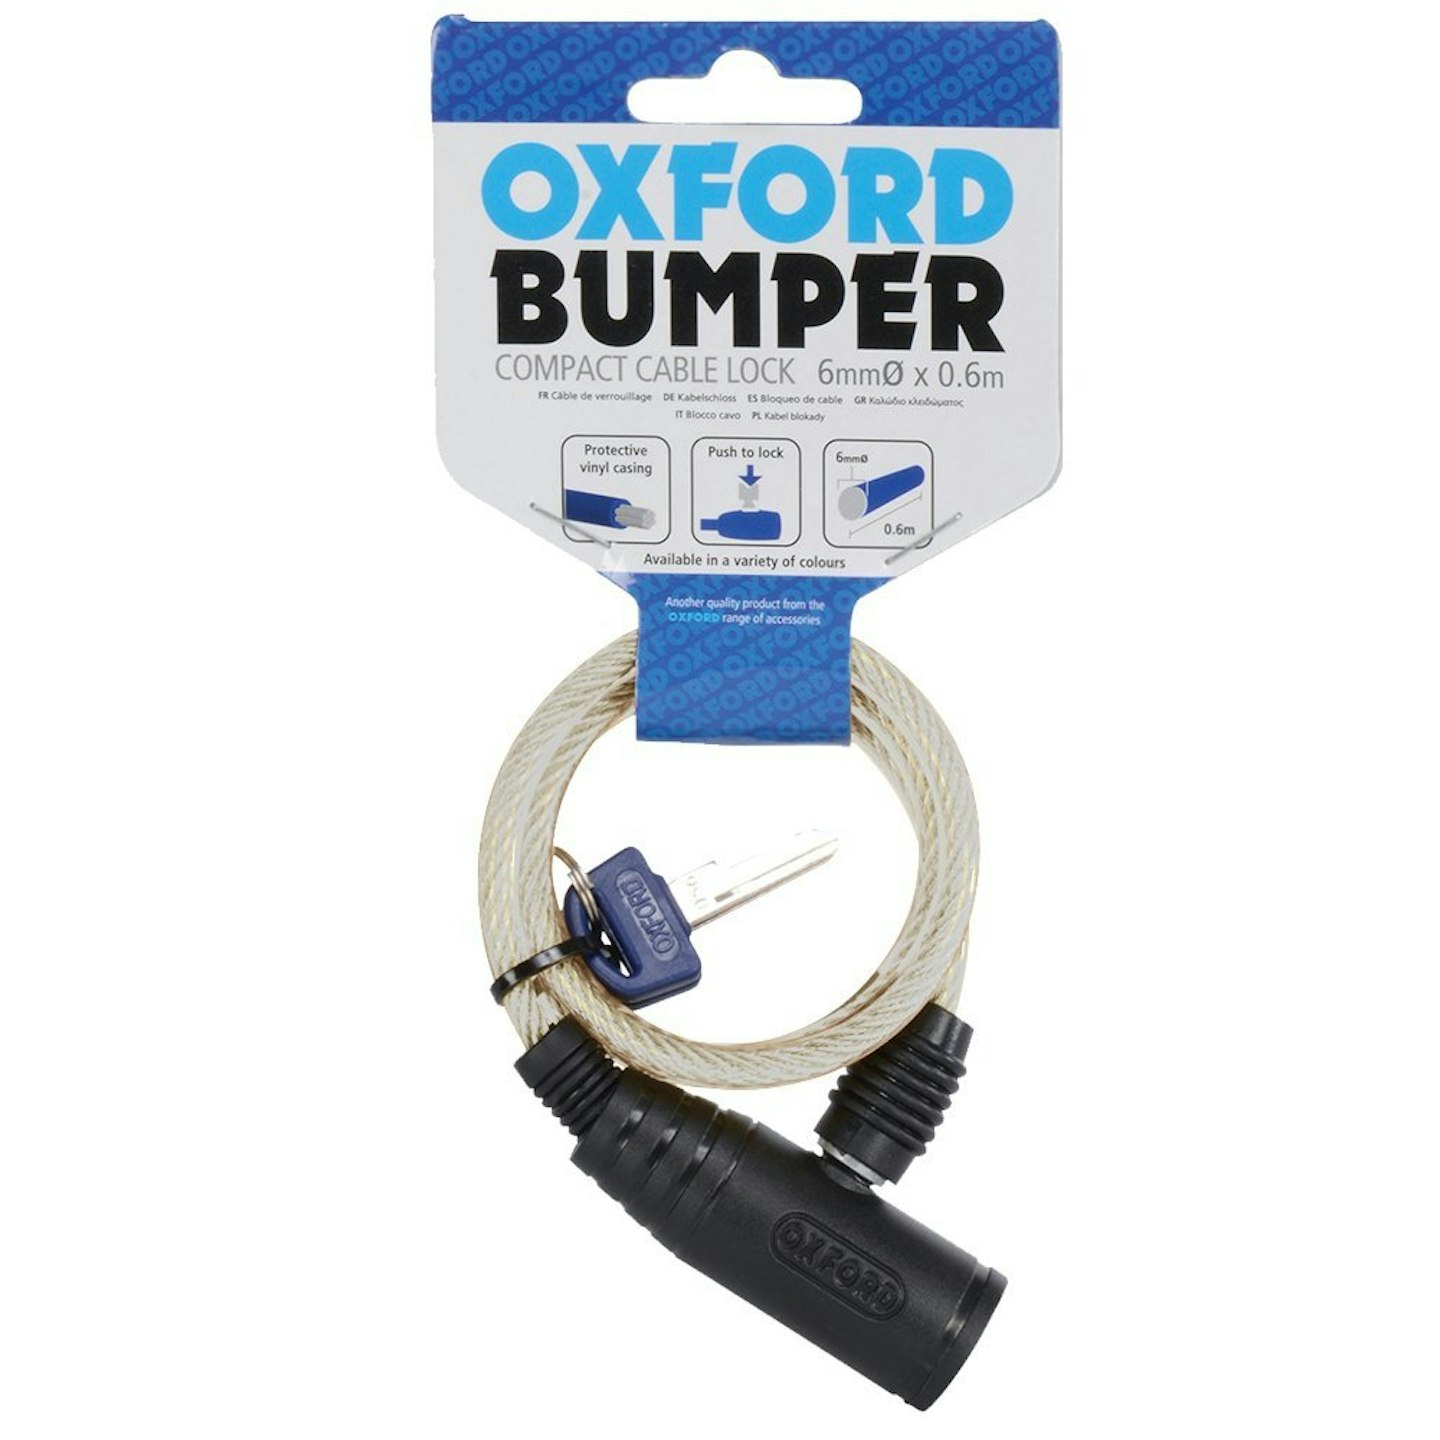 Oxford Bumper Cable Lock 600x6mm, £2.98